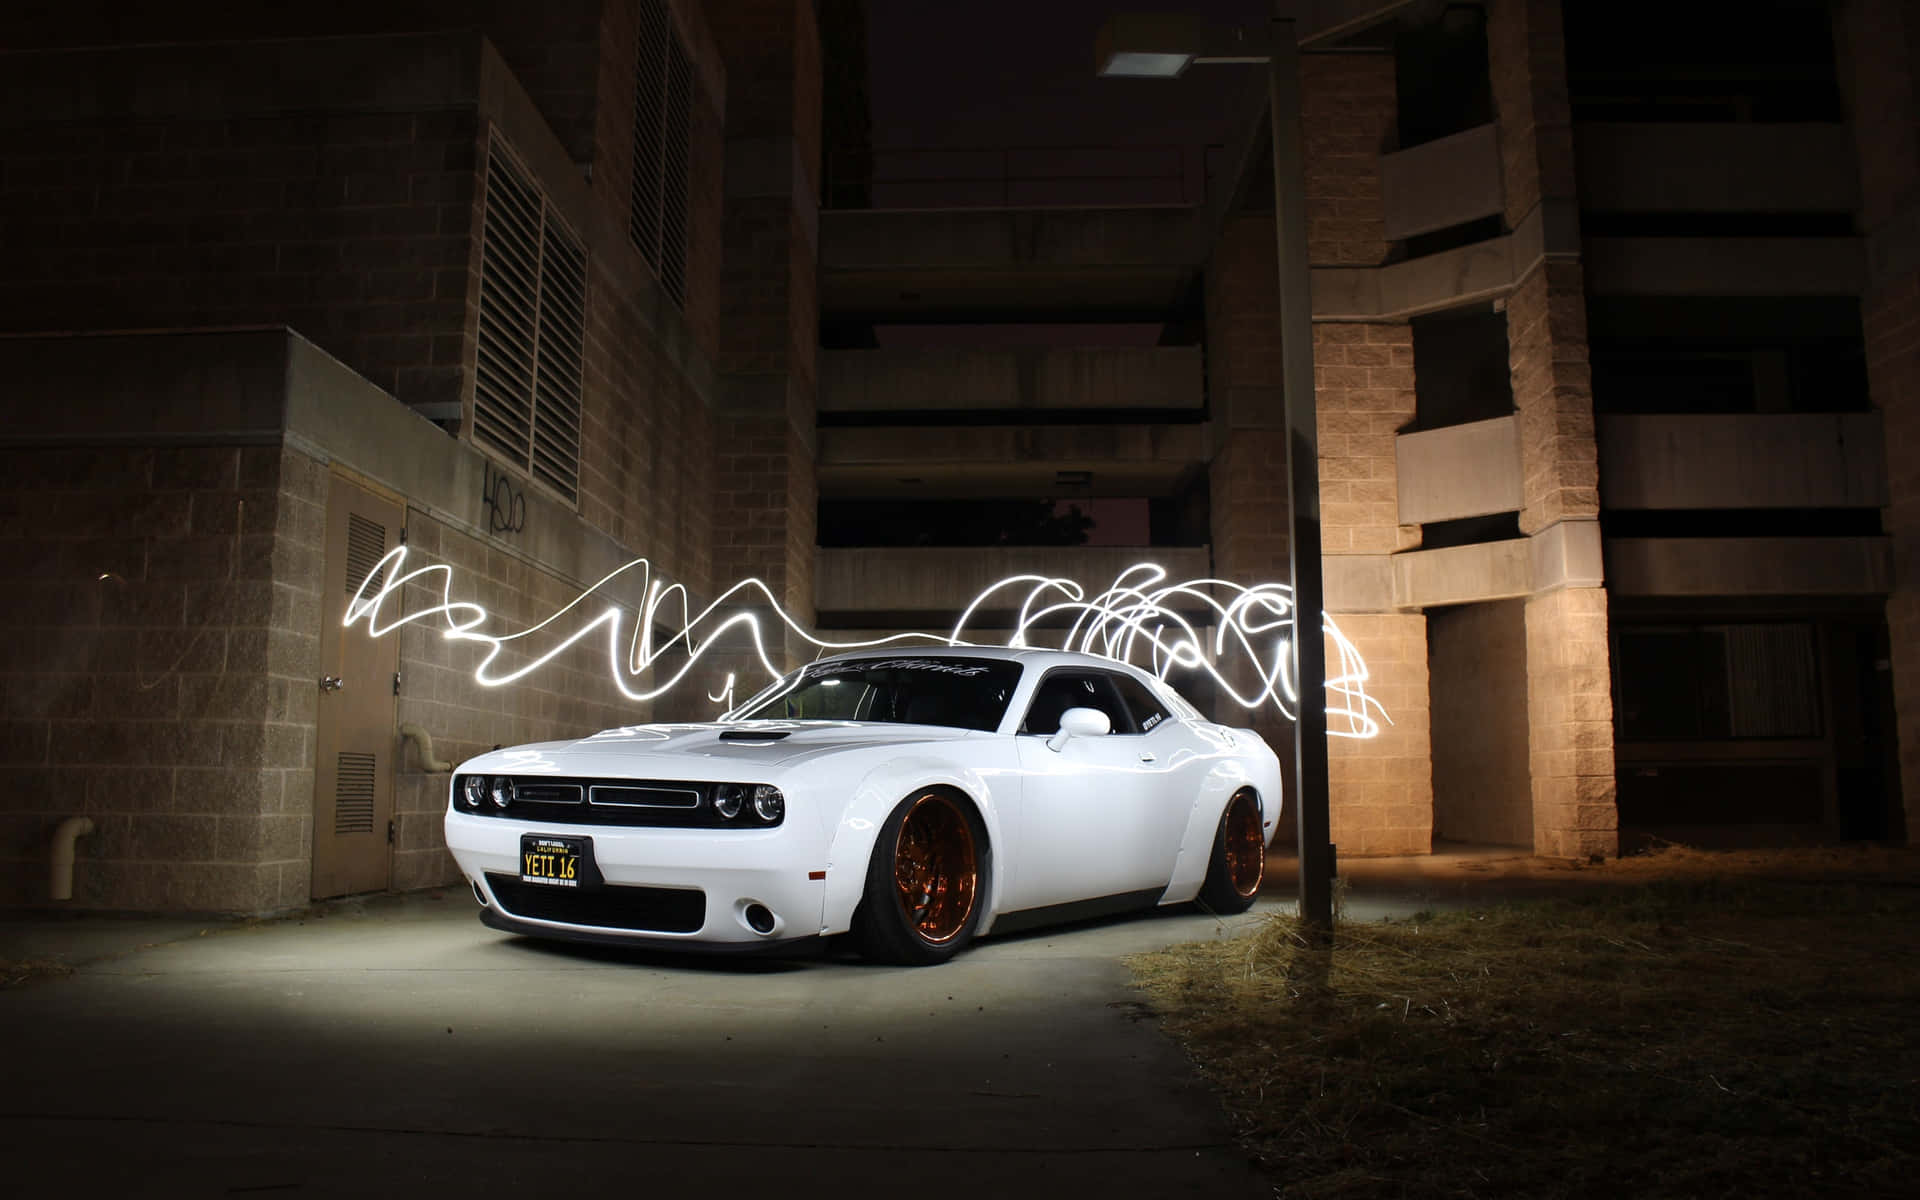 En hvid bil med et lys på det mod et mørkt baggrund Wallpaper